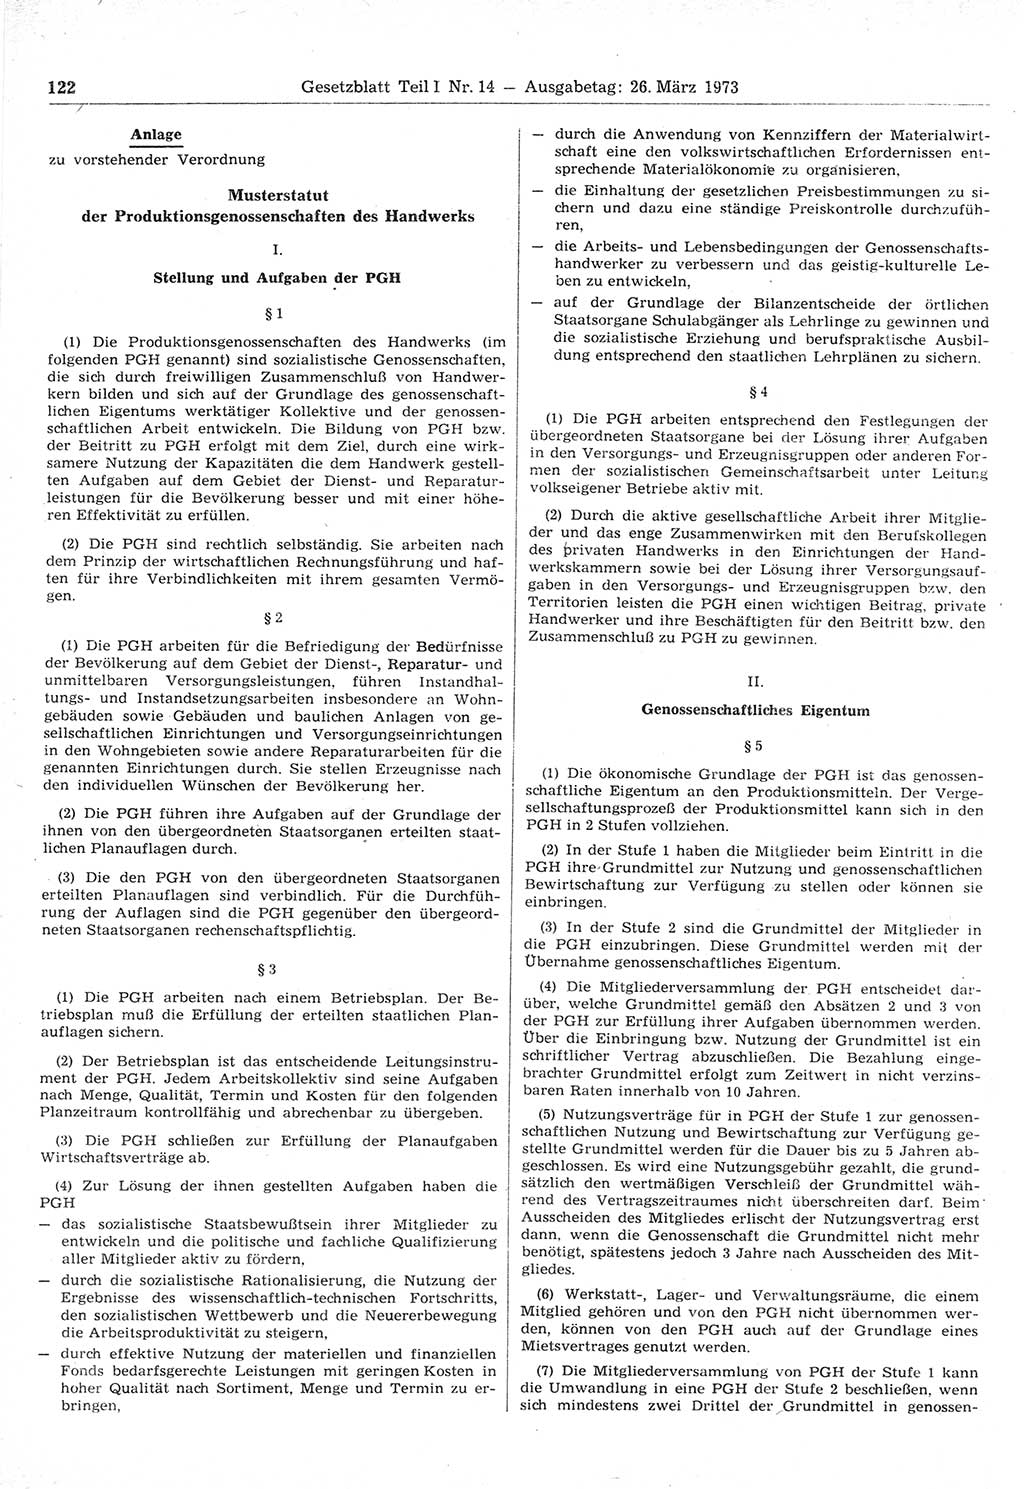 Gesetzblatt (GBl.) der Deutschen Demokratischen Republik (DDR) Teil Ⅰ 1973, Seite 122 (GBl. DDR Ⅰ 1973, S. 122)